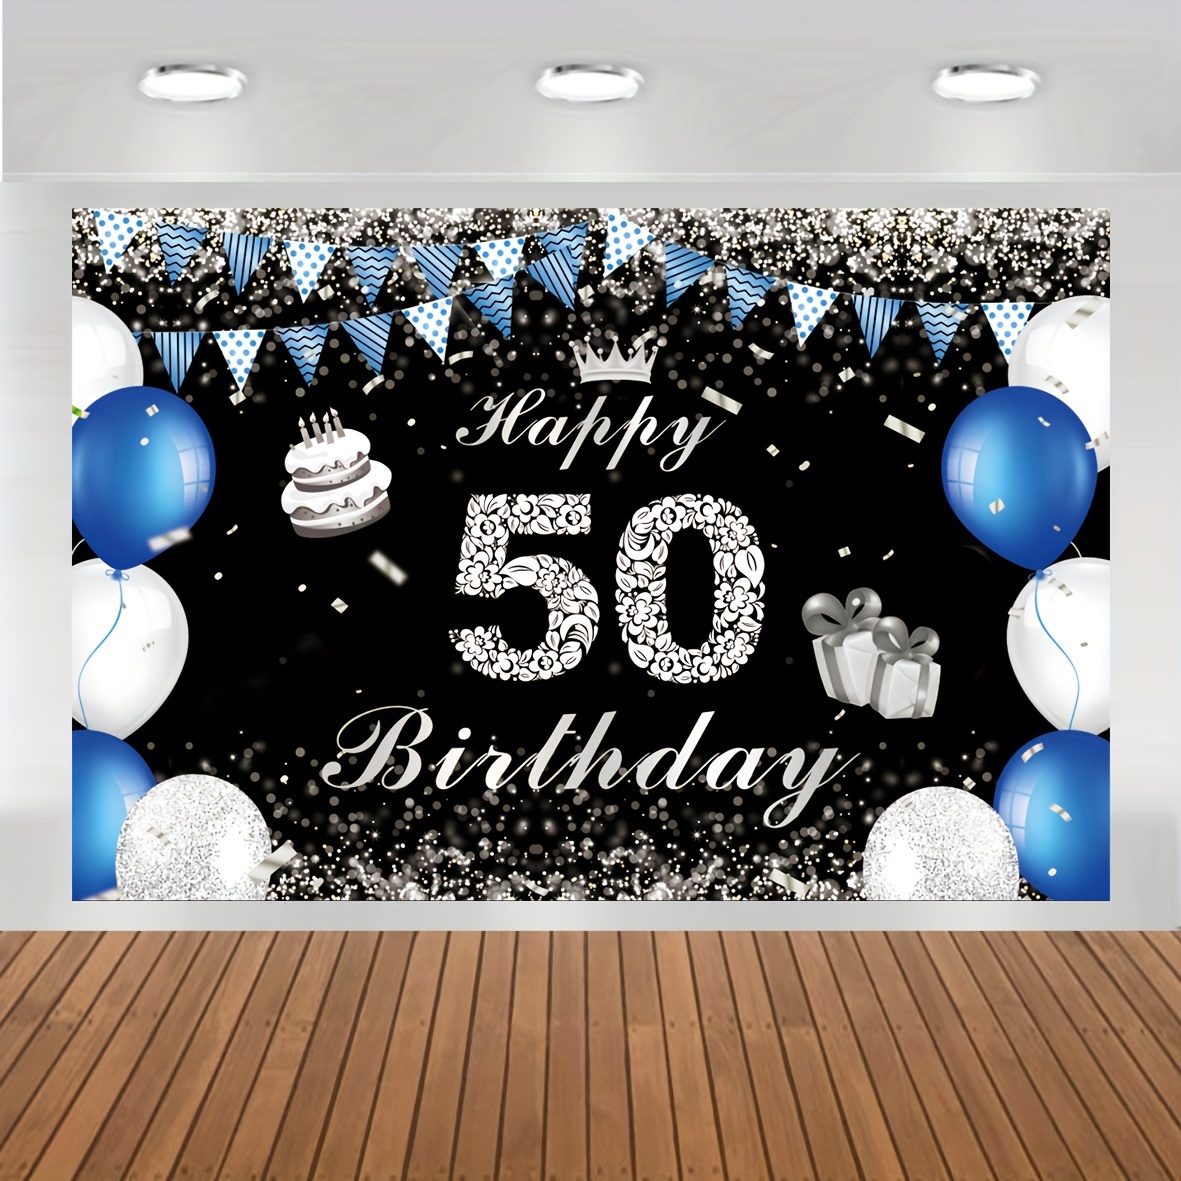  Cartel de fondo de feliz cumpleaños 50, decoraciones de  cumpleaños de 50 años, suministros para fiestas, decoraciones de fiesta en  negro y dorado para mujeres y hombres, decoración de mesa de